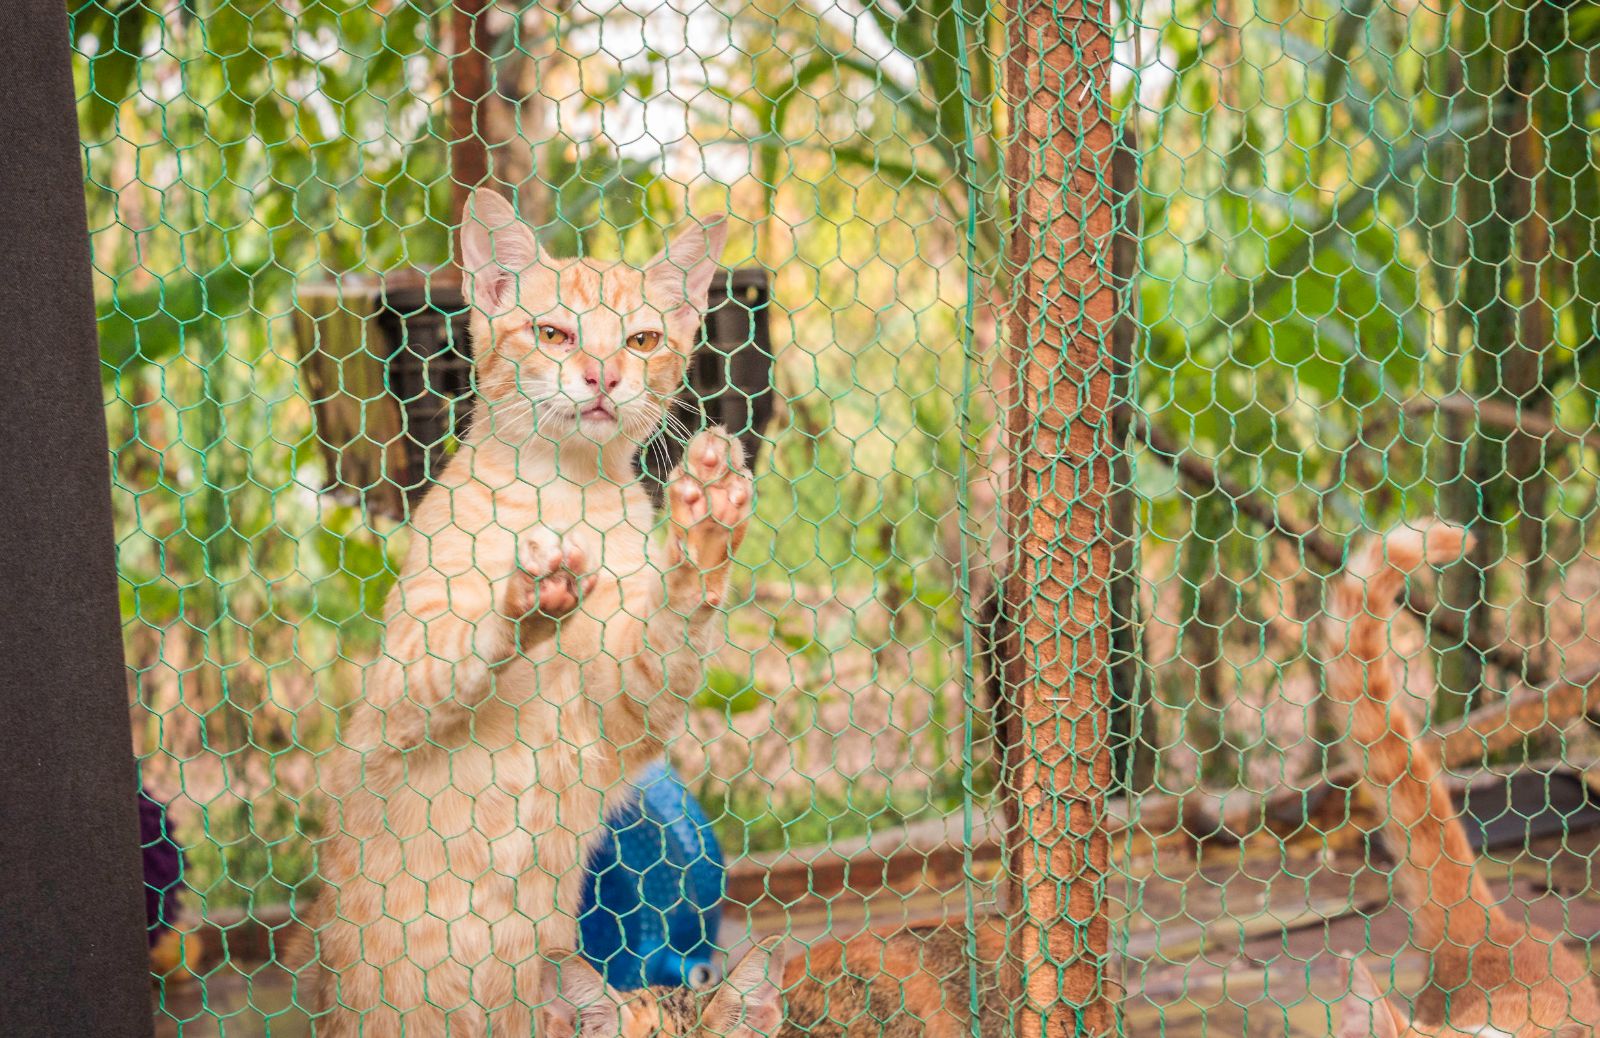 Report choc: in Vietnam un milione di gatti all'anno viene mangiata